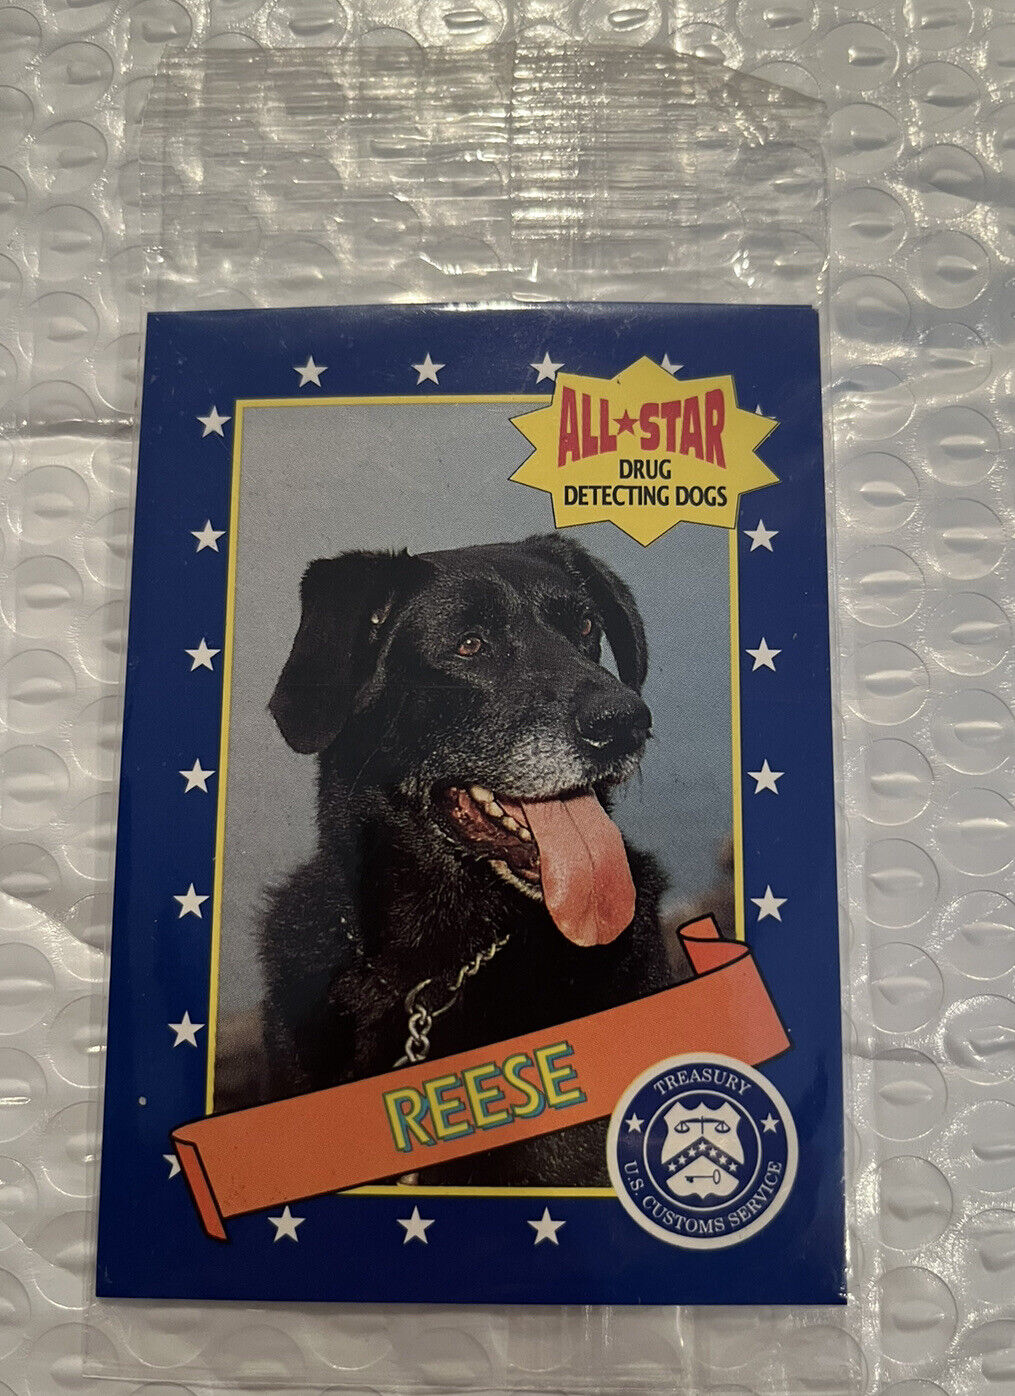 1992 Milk Bone All Star Drug Detecting Dogs U.S. Custom Service Cards 2 In Pack